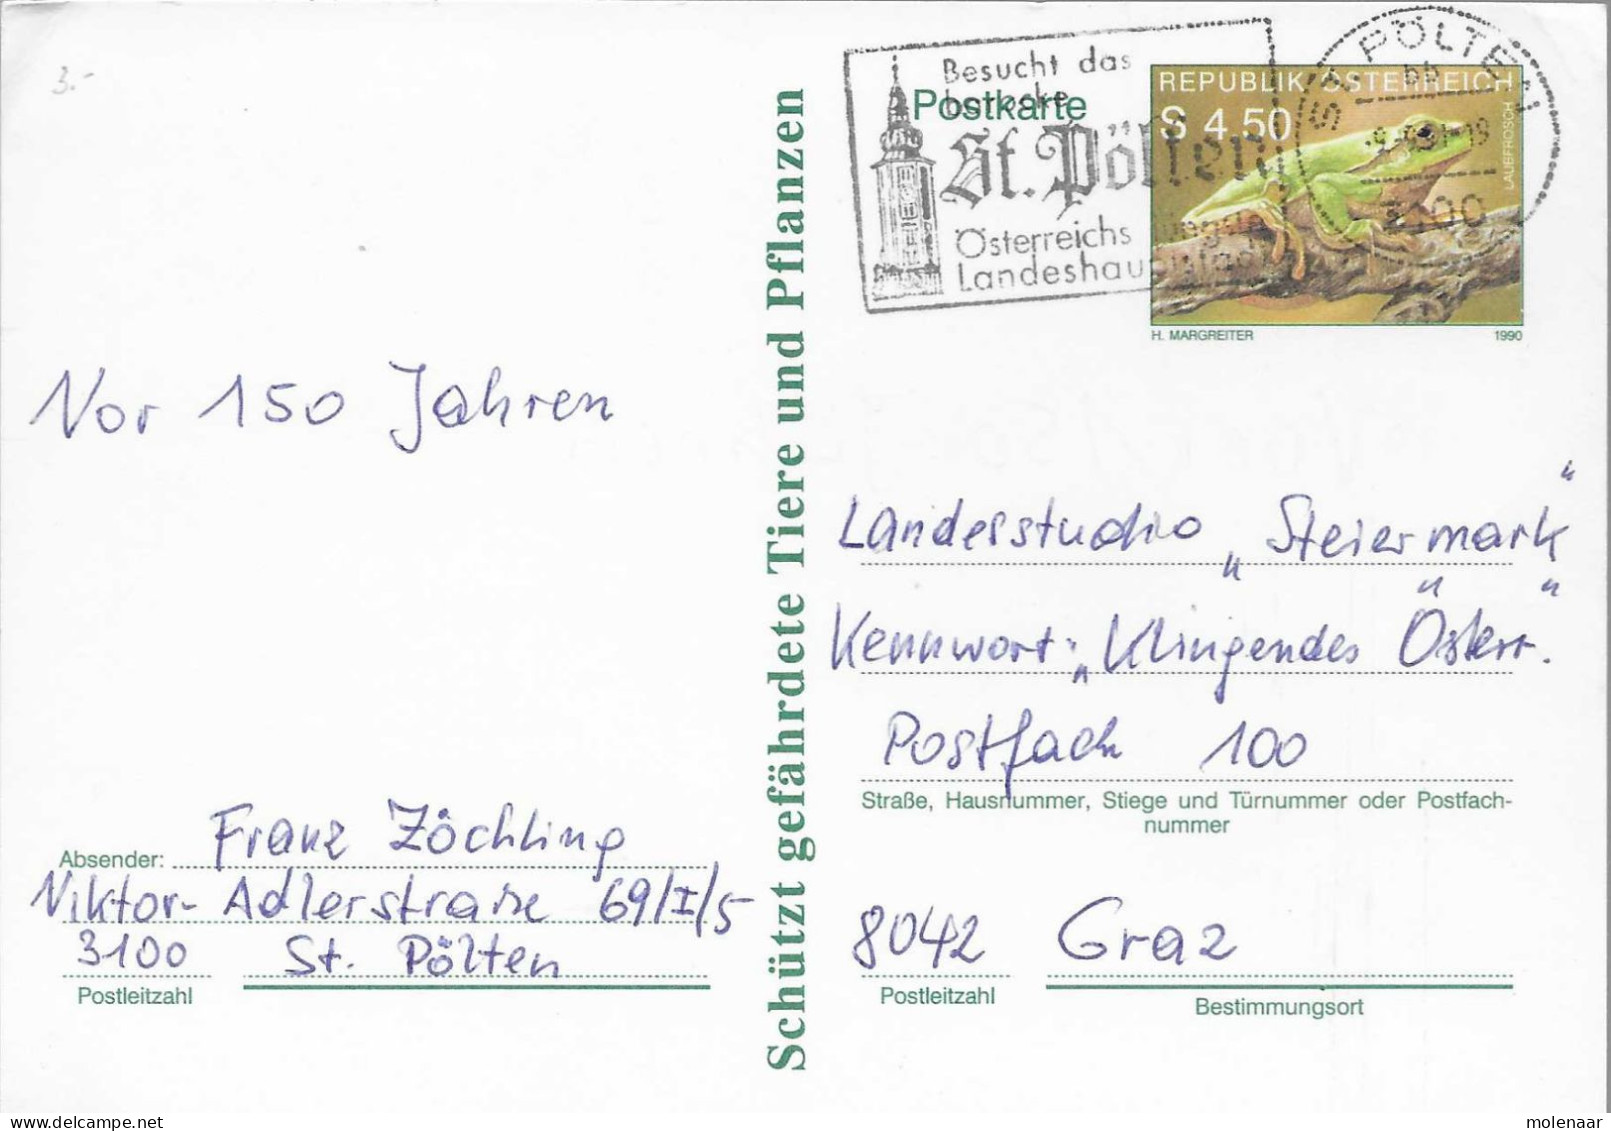 Postzegels > Europa > Oostenrijk > Postwaardestukken > Briefkaart Uit 1990 (17736) - Postcards